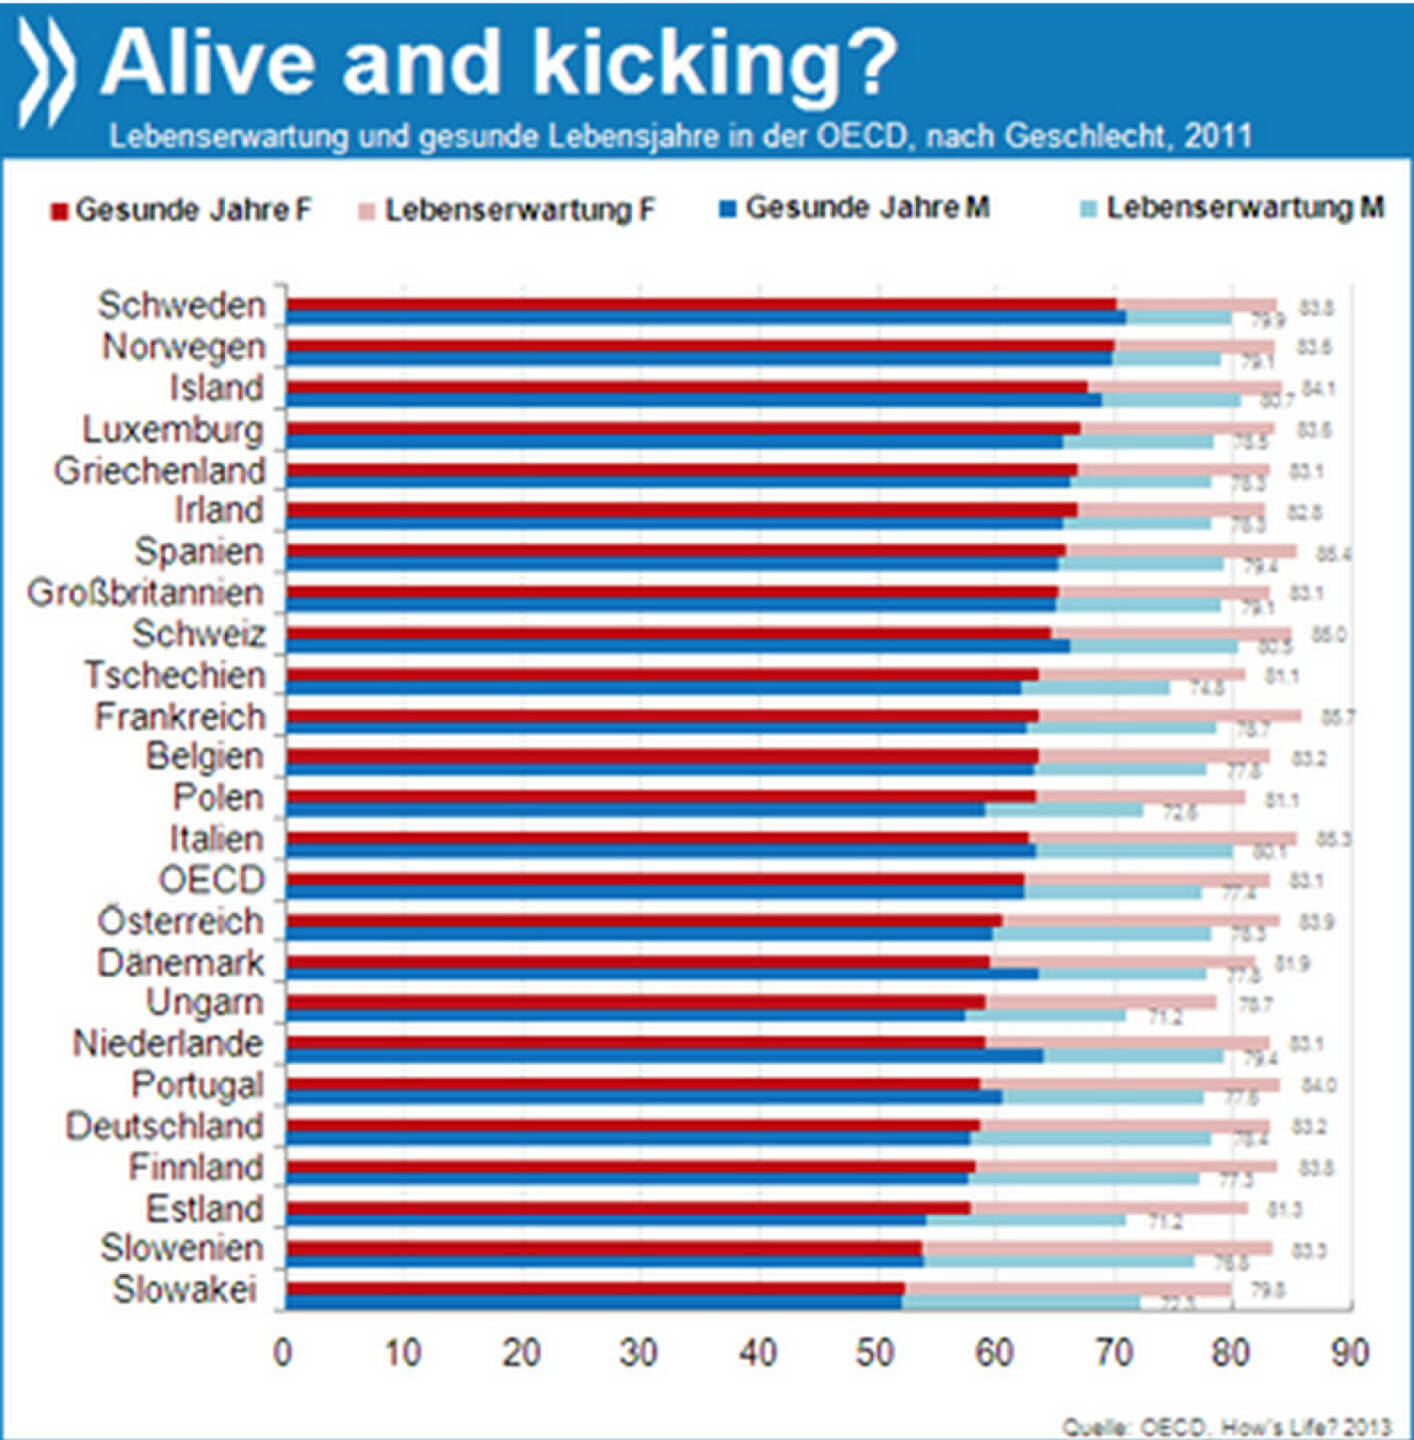 Alive and kicking? Frauen in der OECD leben im Durchschnitt sechs Jahre länger als Männer. Allerdings ist ein Viertel ihrer Lebenszeit durch Krankheiten beeinträchtigt, Männer verbringen nur knapp ein Fünftel ihrer Lebenszeit mit gesundheitlichen Einschränkungen.

Mehr Informationen unter: http://bit.ly/1bZgivr (How’s Life, S. 108 ff.)